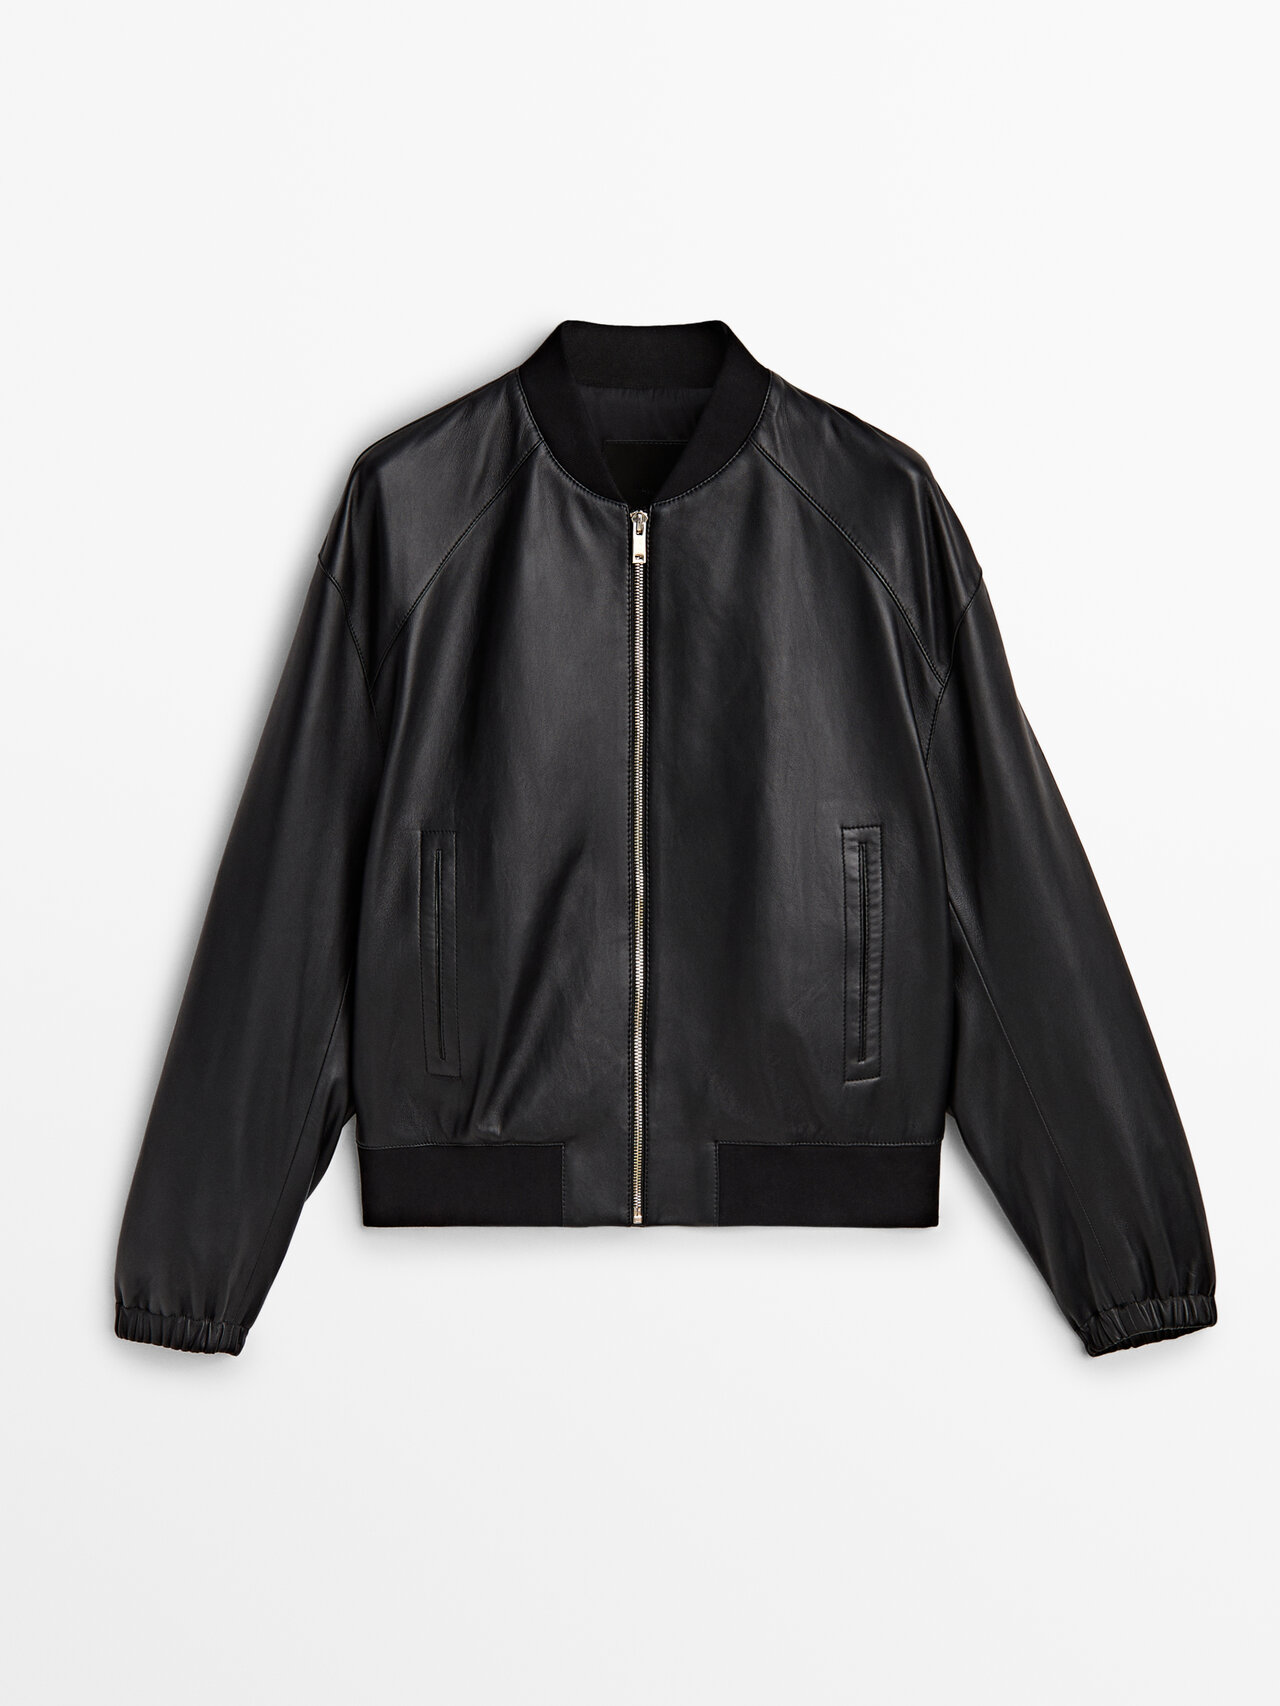 Massimo Dutti Black Nappa Leather Bomber Jacket